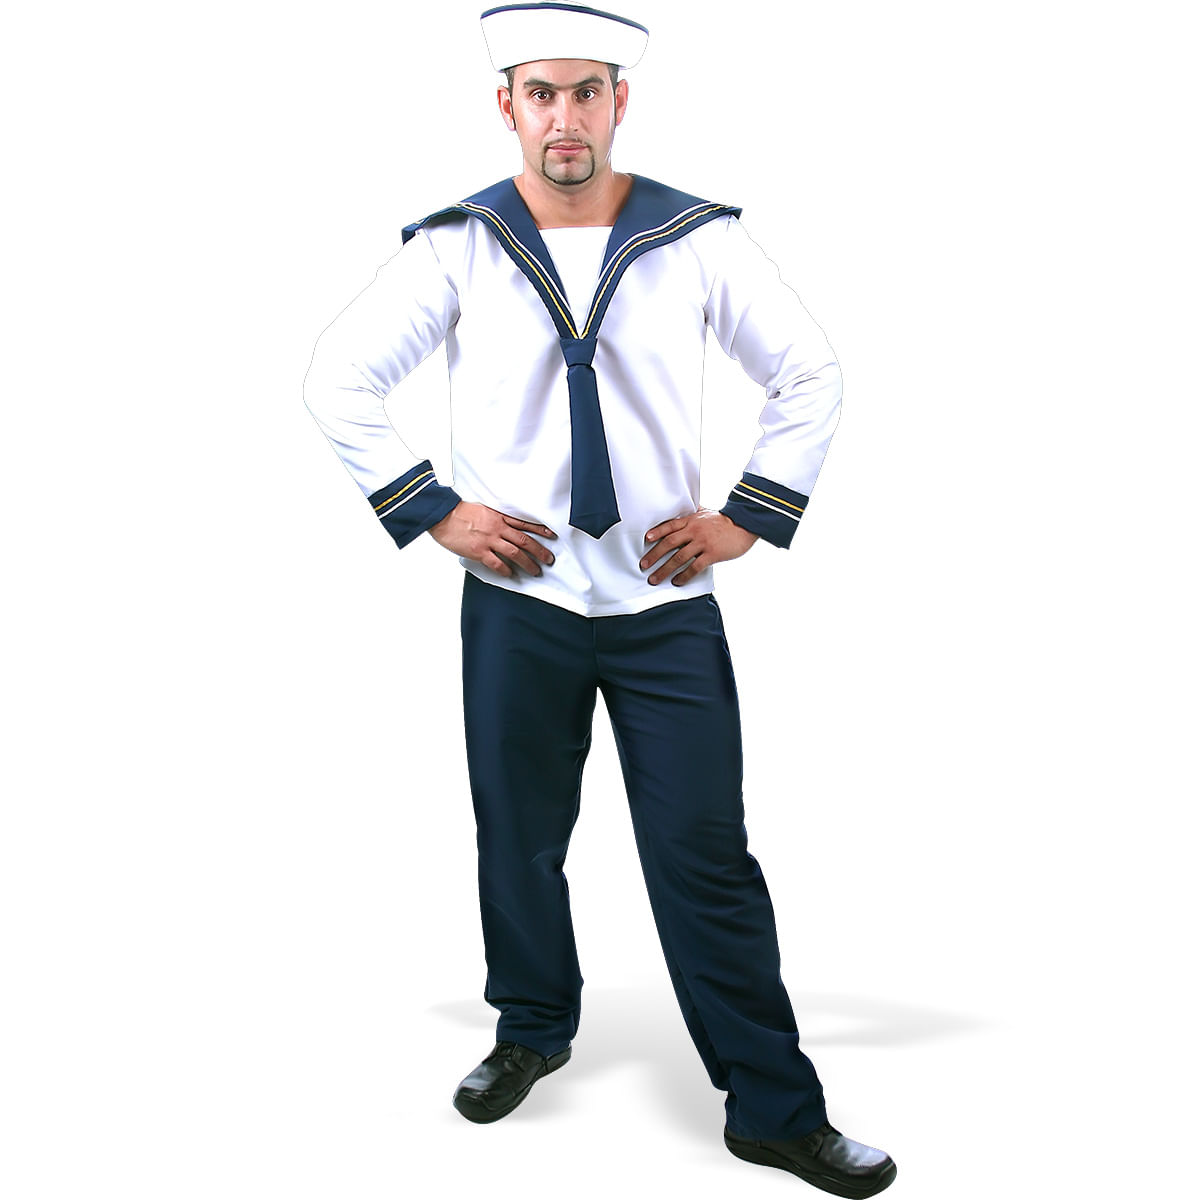 roupas de marinheiro feminino